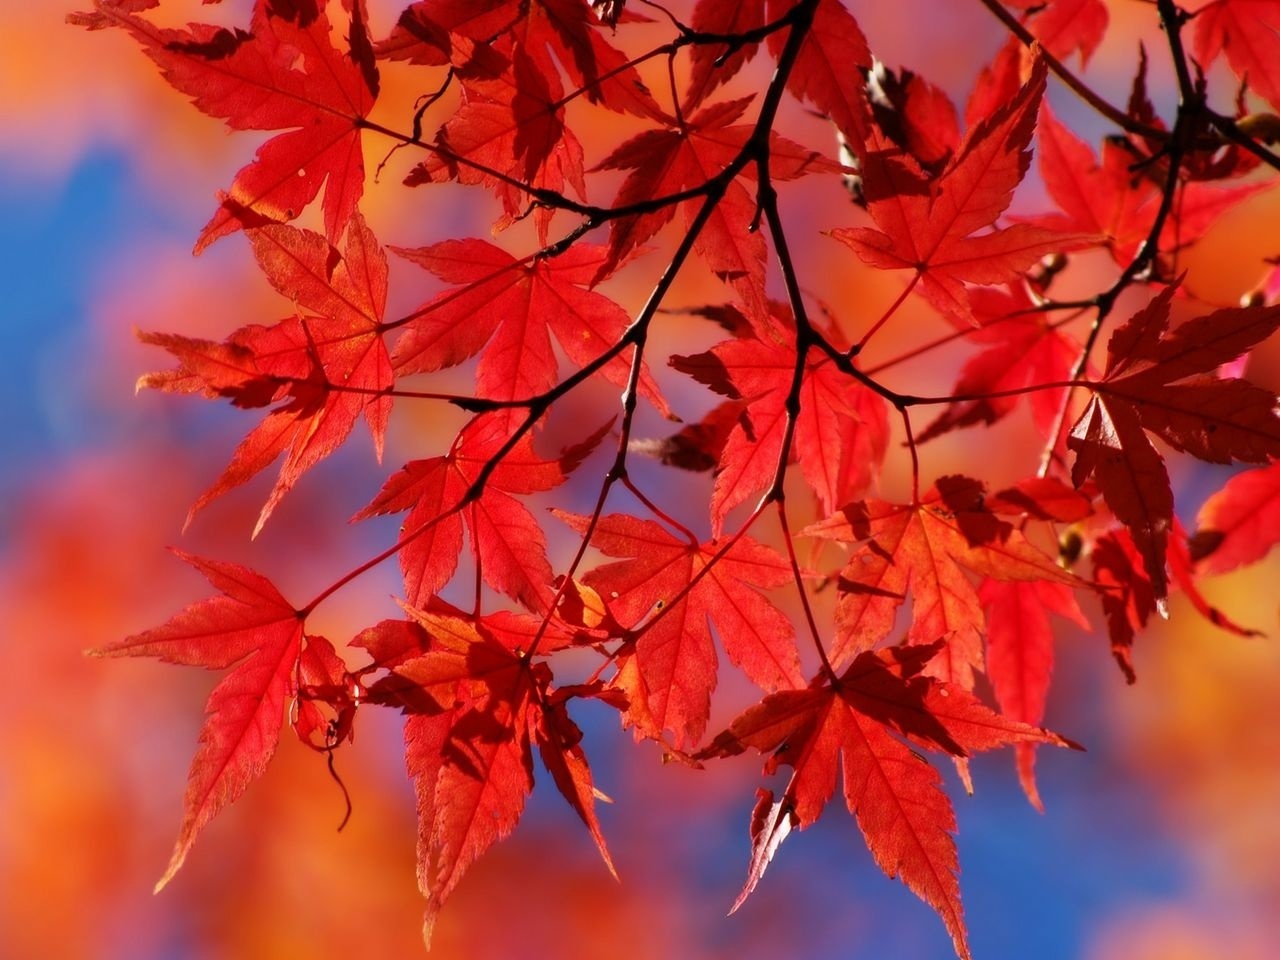 25+] Red Autumn Leaves Wallpapers - WallpaperSafari